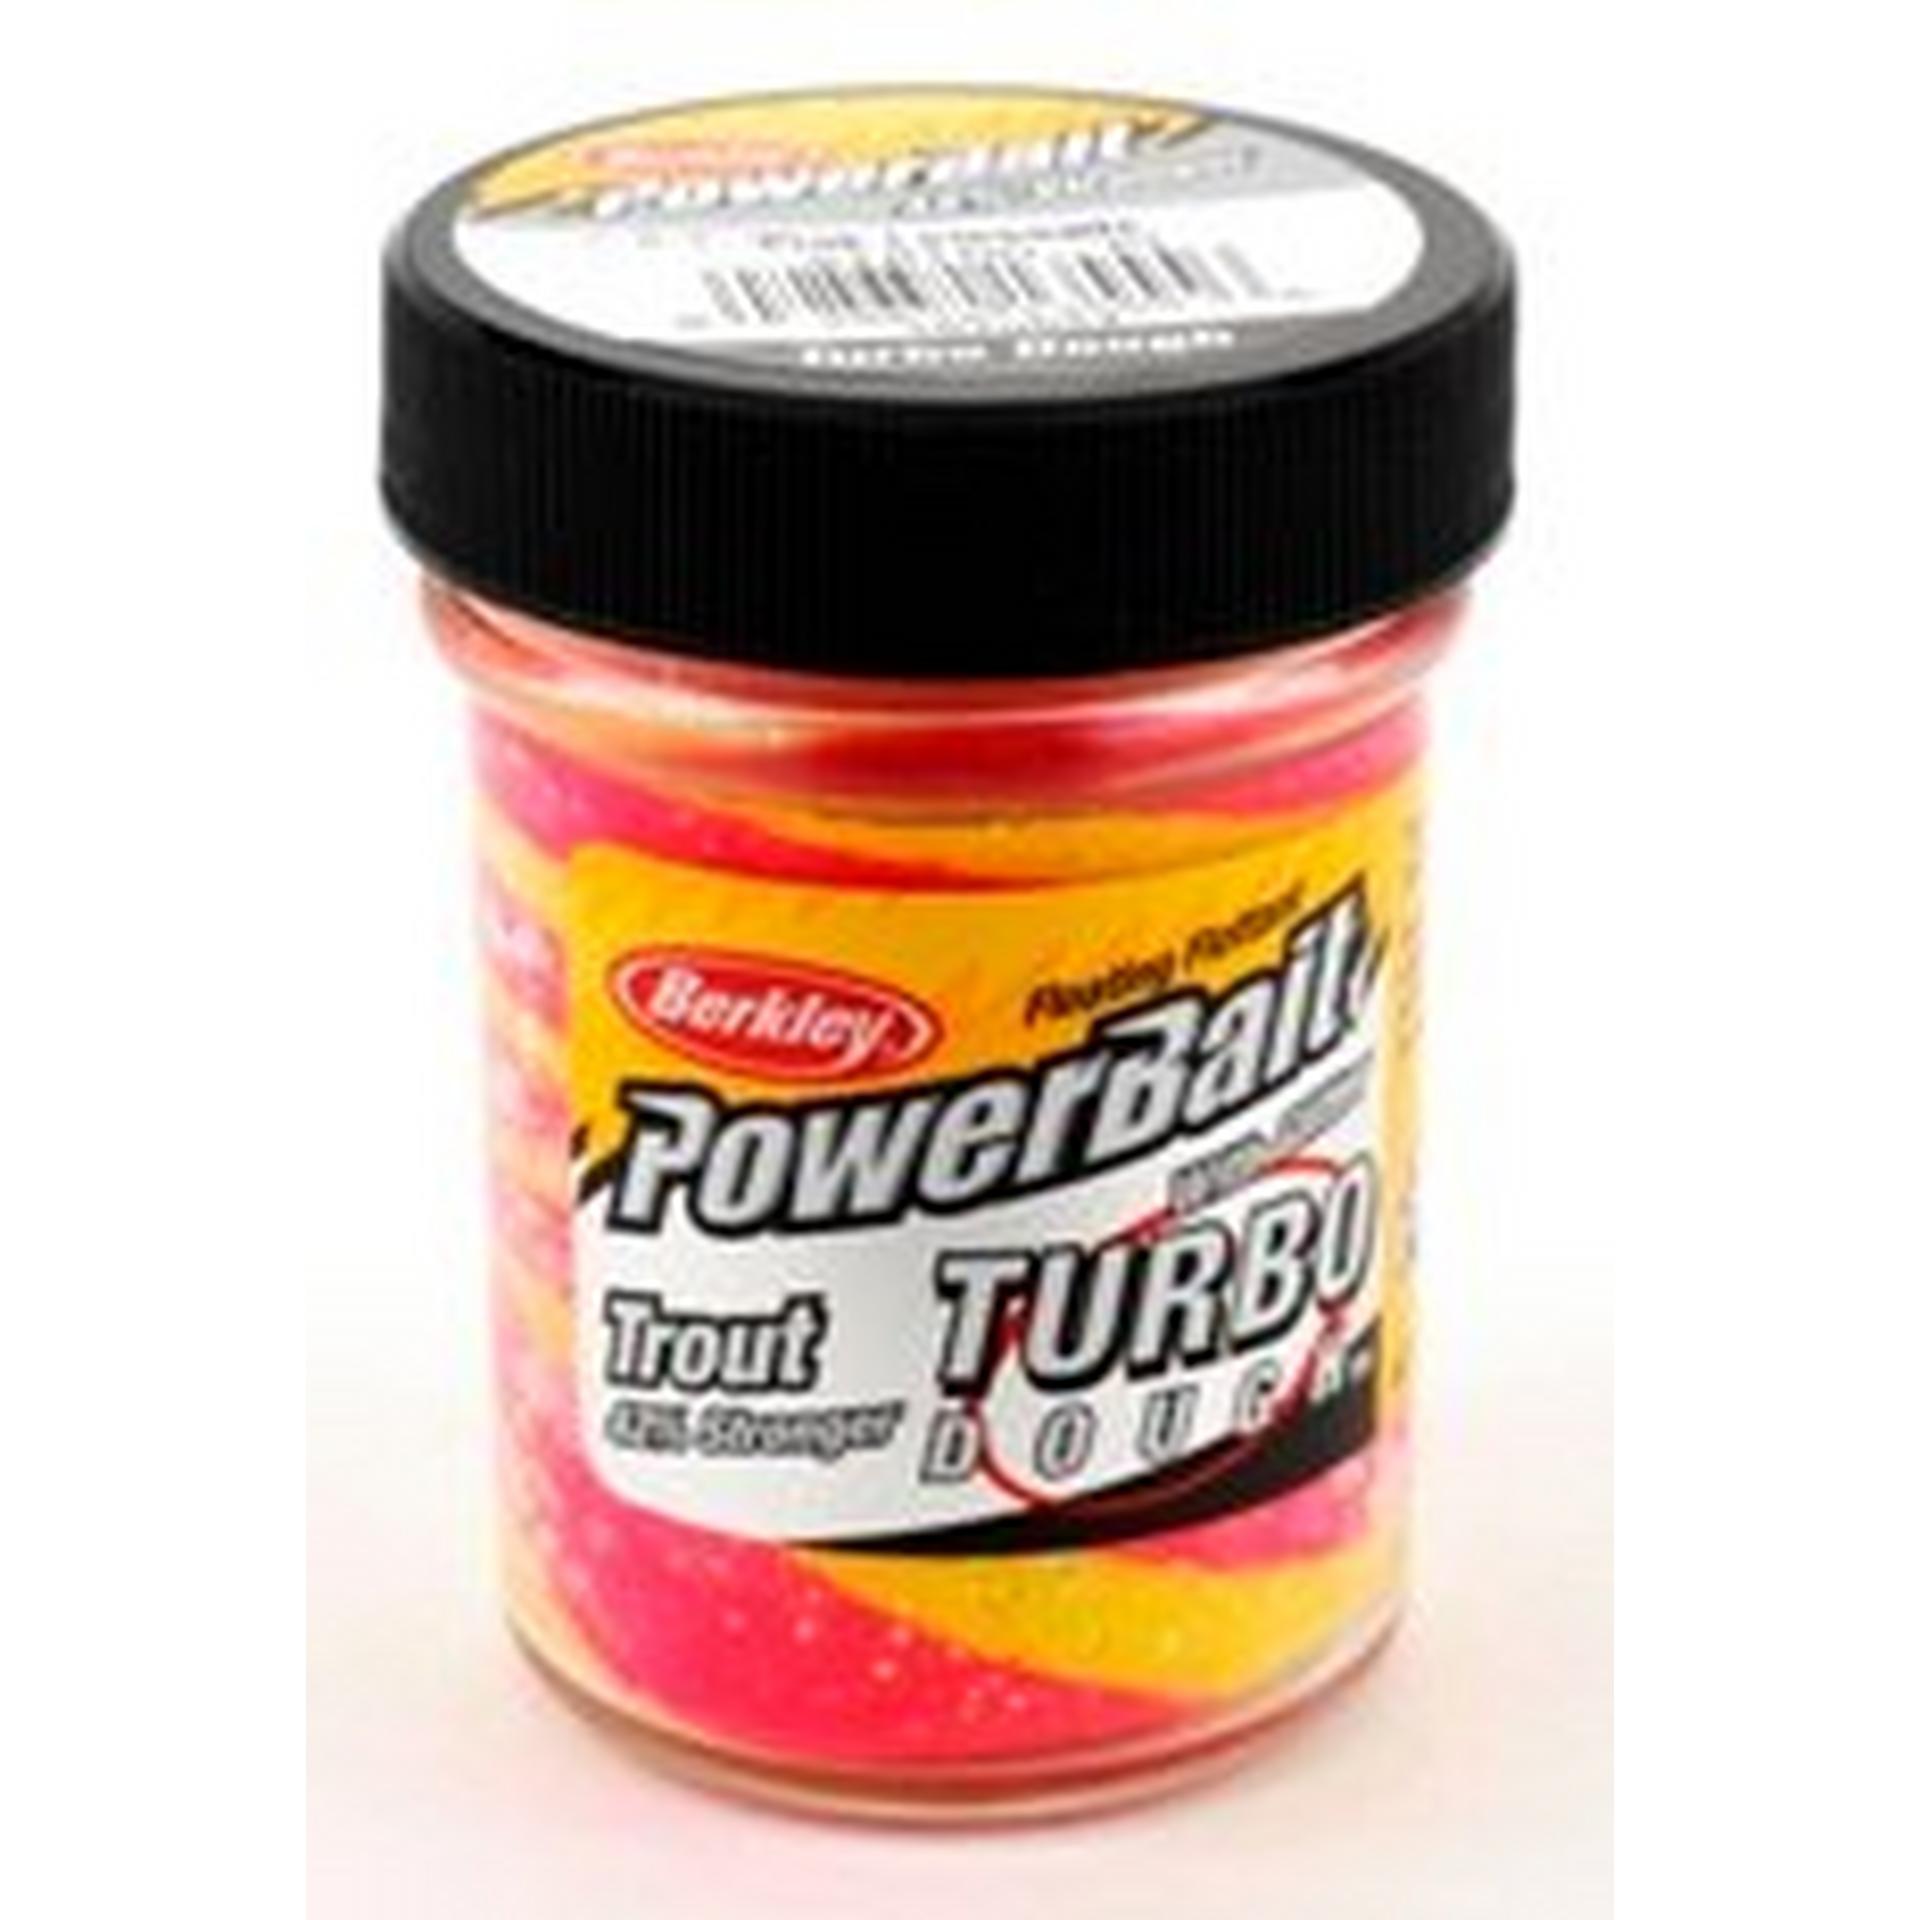 PowerBait® Turbo Dough® Trout Bait